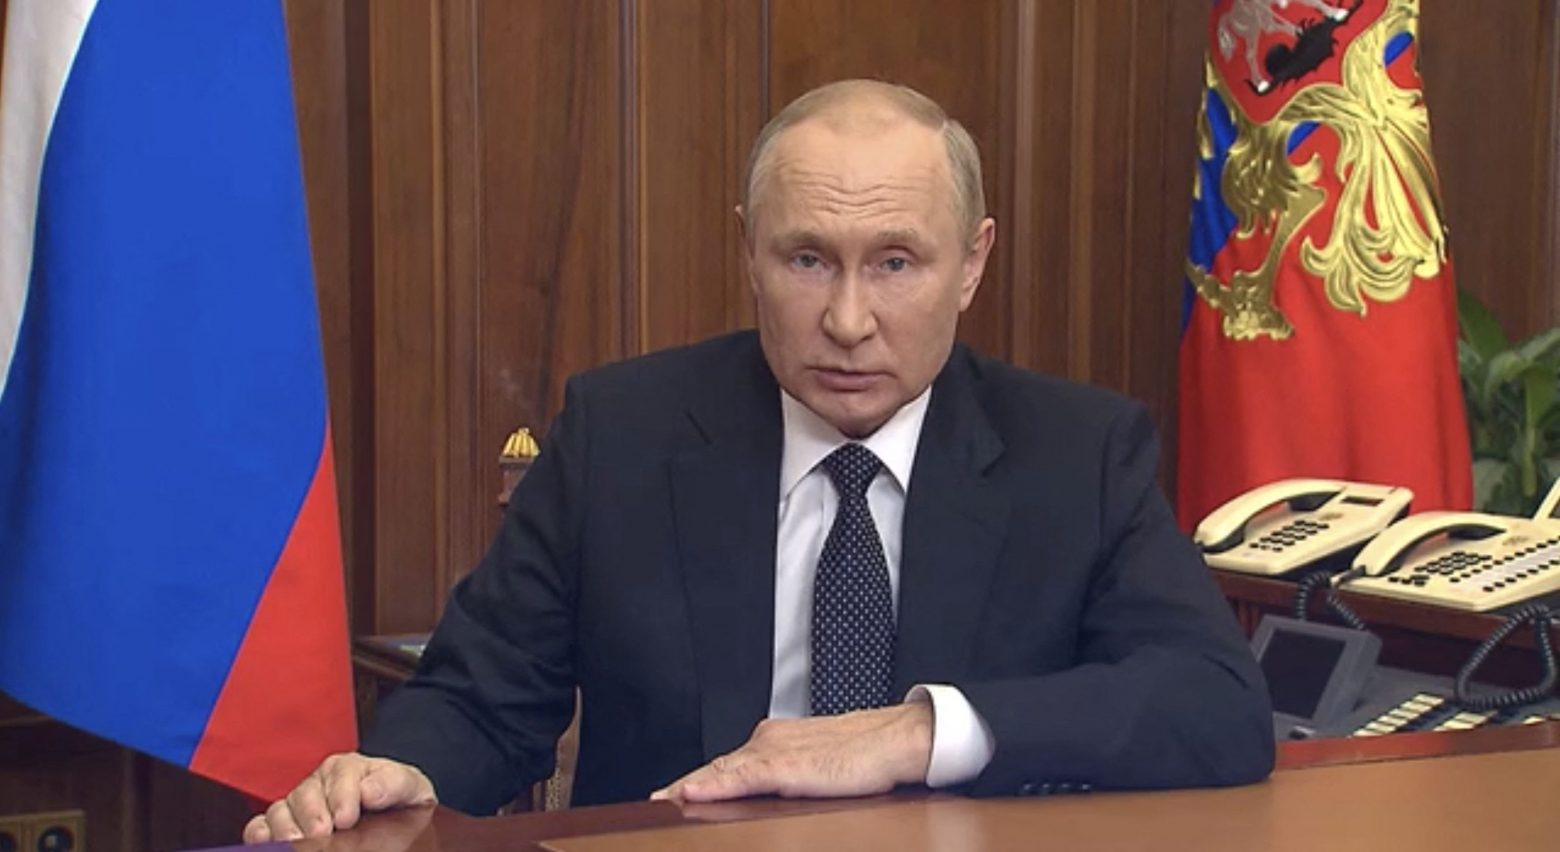 Ρωσία: Ο Πούτιν κήρυξε μερική επιστράτευση - Ραγδαίες εξελίξεις